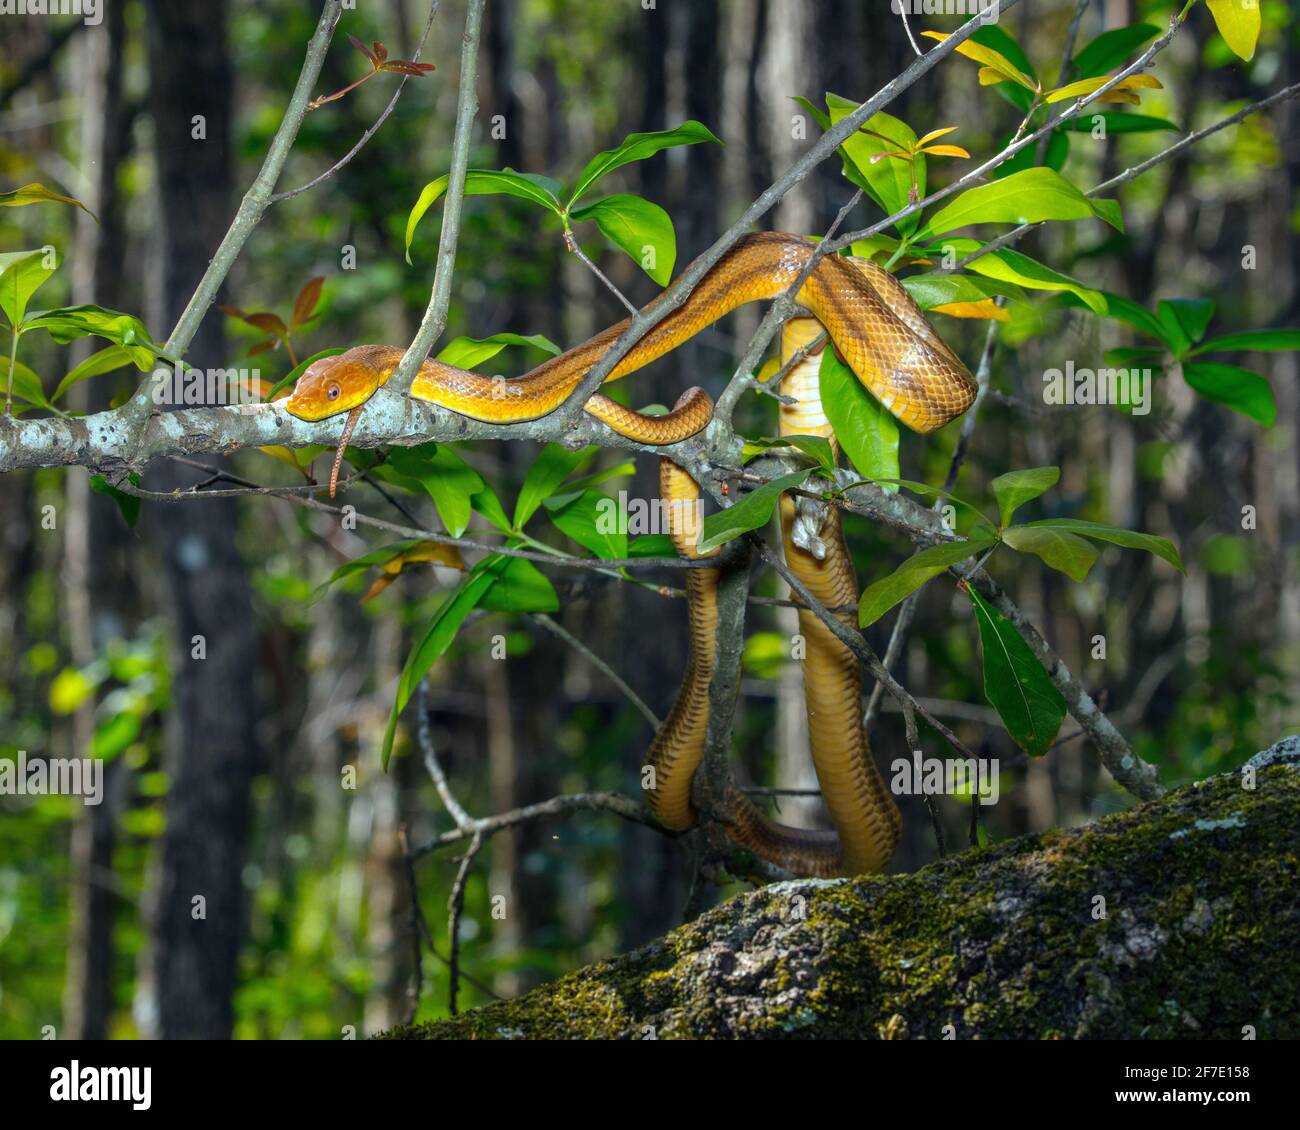 Una serpiente de rata oriental amarilla, Pantherophis alleghaniensis, forece en un pantano. Foto de stock